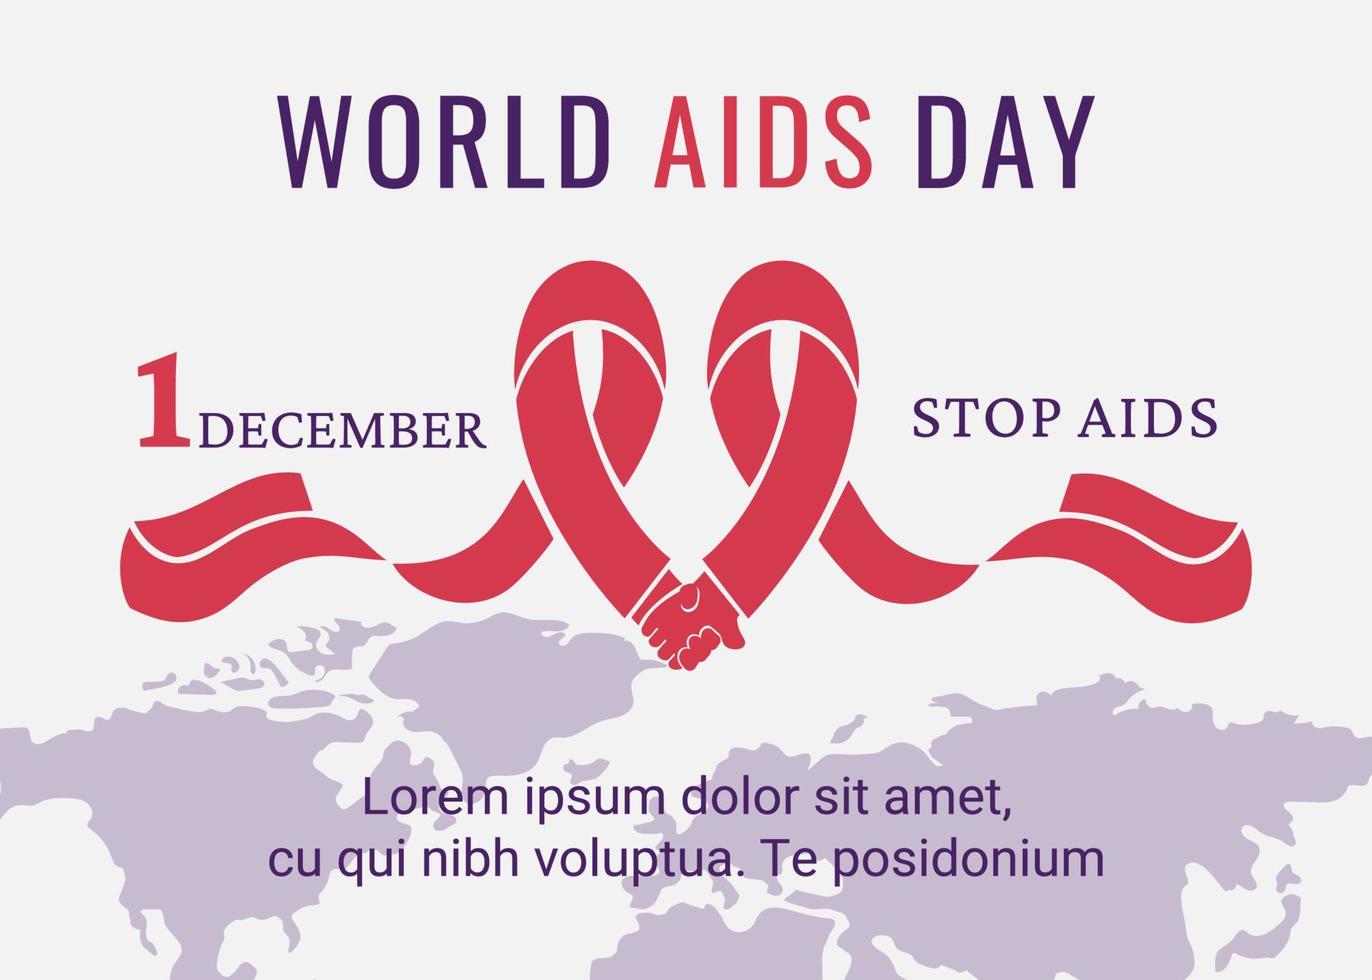 bandeira do dia mundial da aids. fita vermelha como símbolo do controle da aids. suporte para pessoas infectadas pelo hiv. mapa-múndi com letras. ilustração vetorial vetor